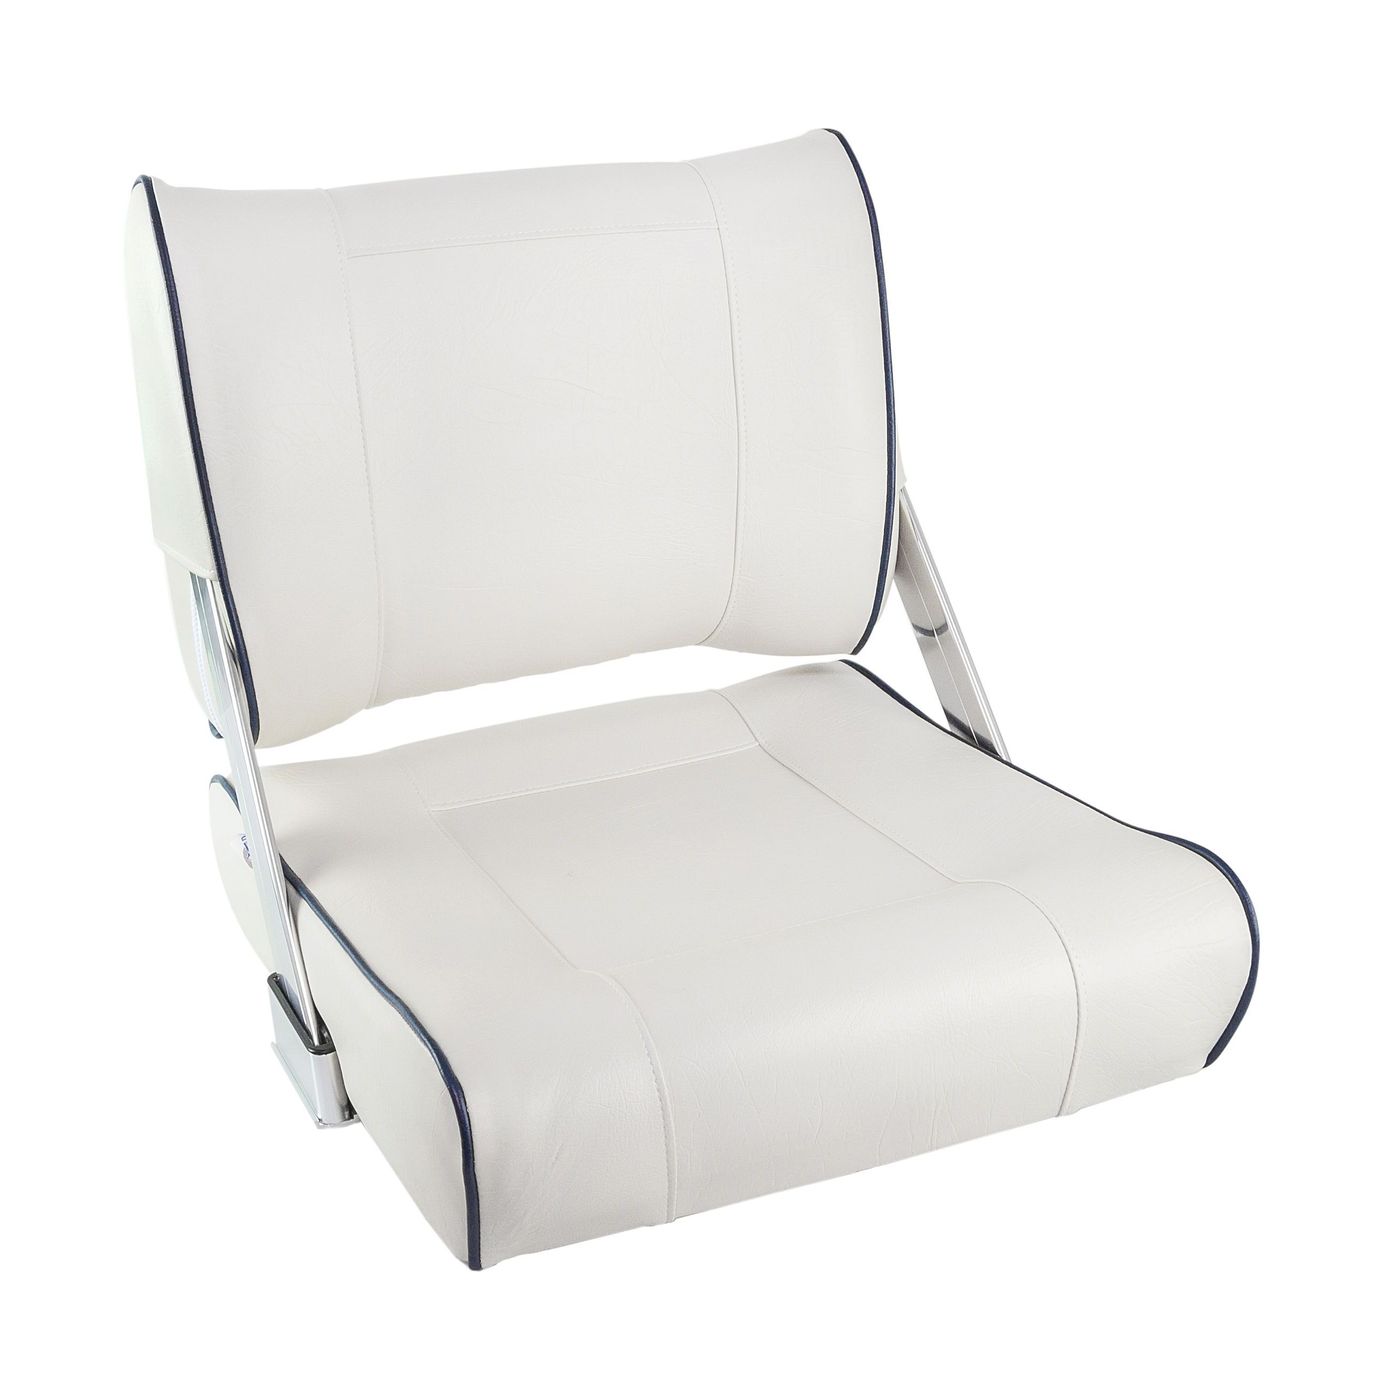 Кресло мягкое с перекидной спинкой белого цвета и синим кантом 1042048 серебряное кресло ные иллюстрации паулина бэйнс льюис клайв стейплз